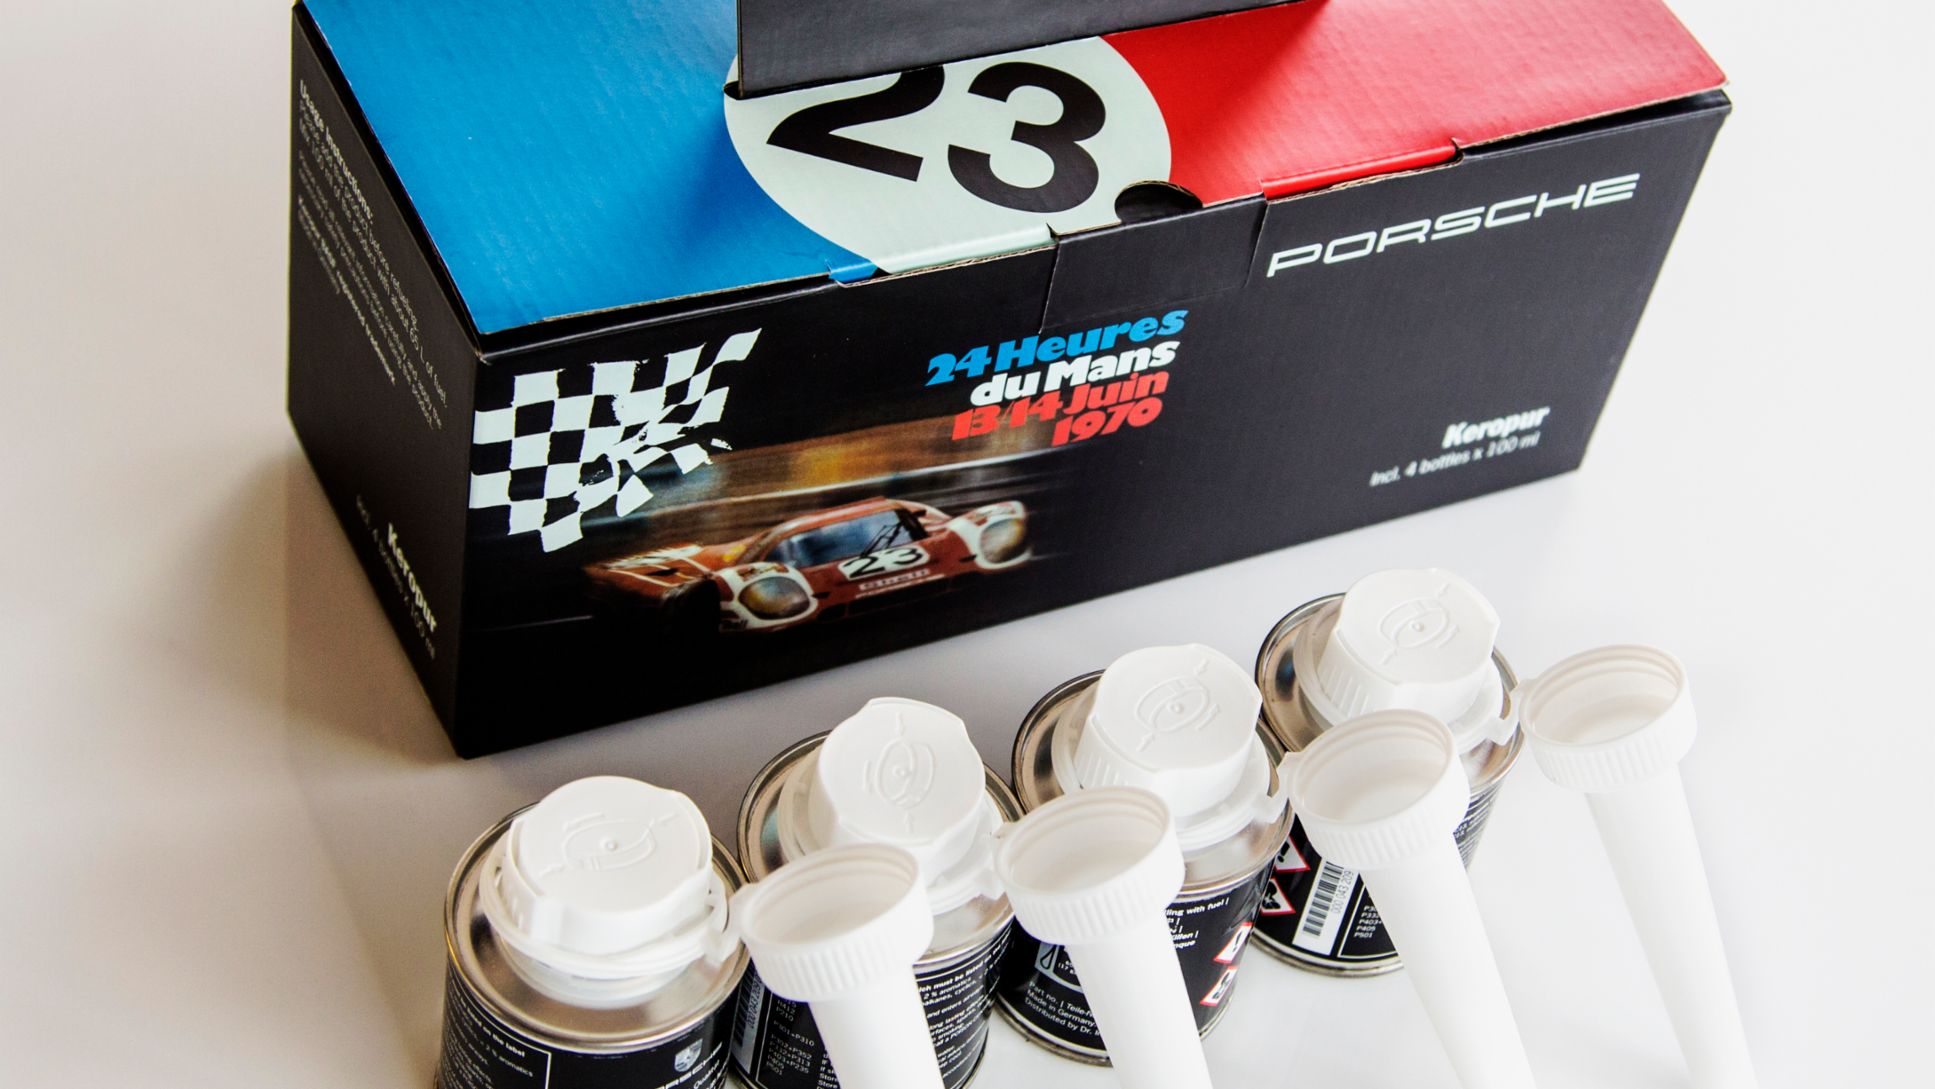 Porsche presenta su aditivo Keropur para motores de gasolina.